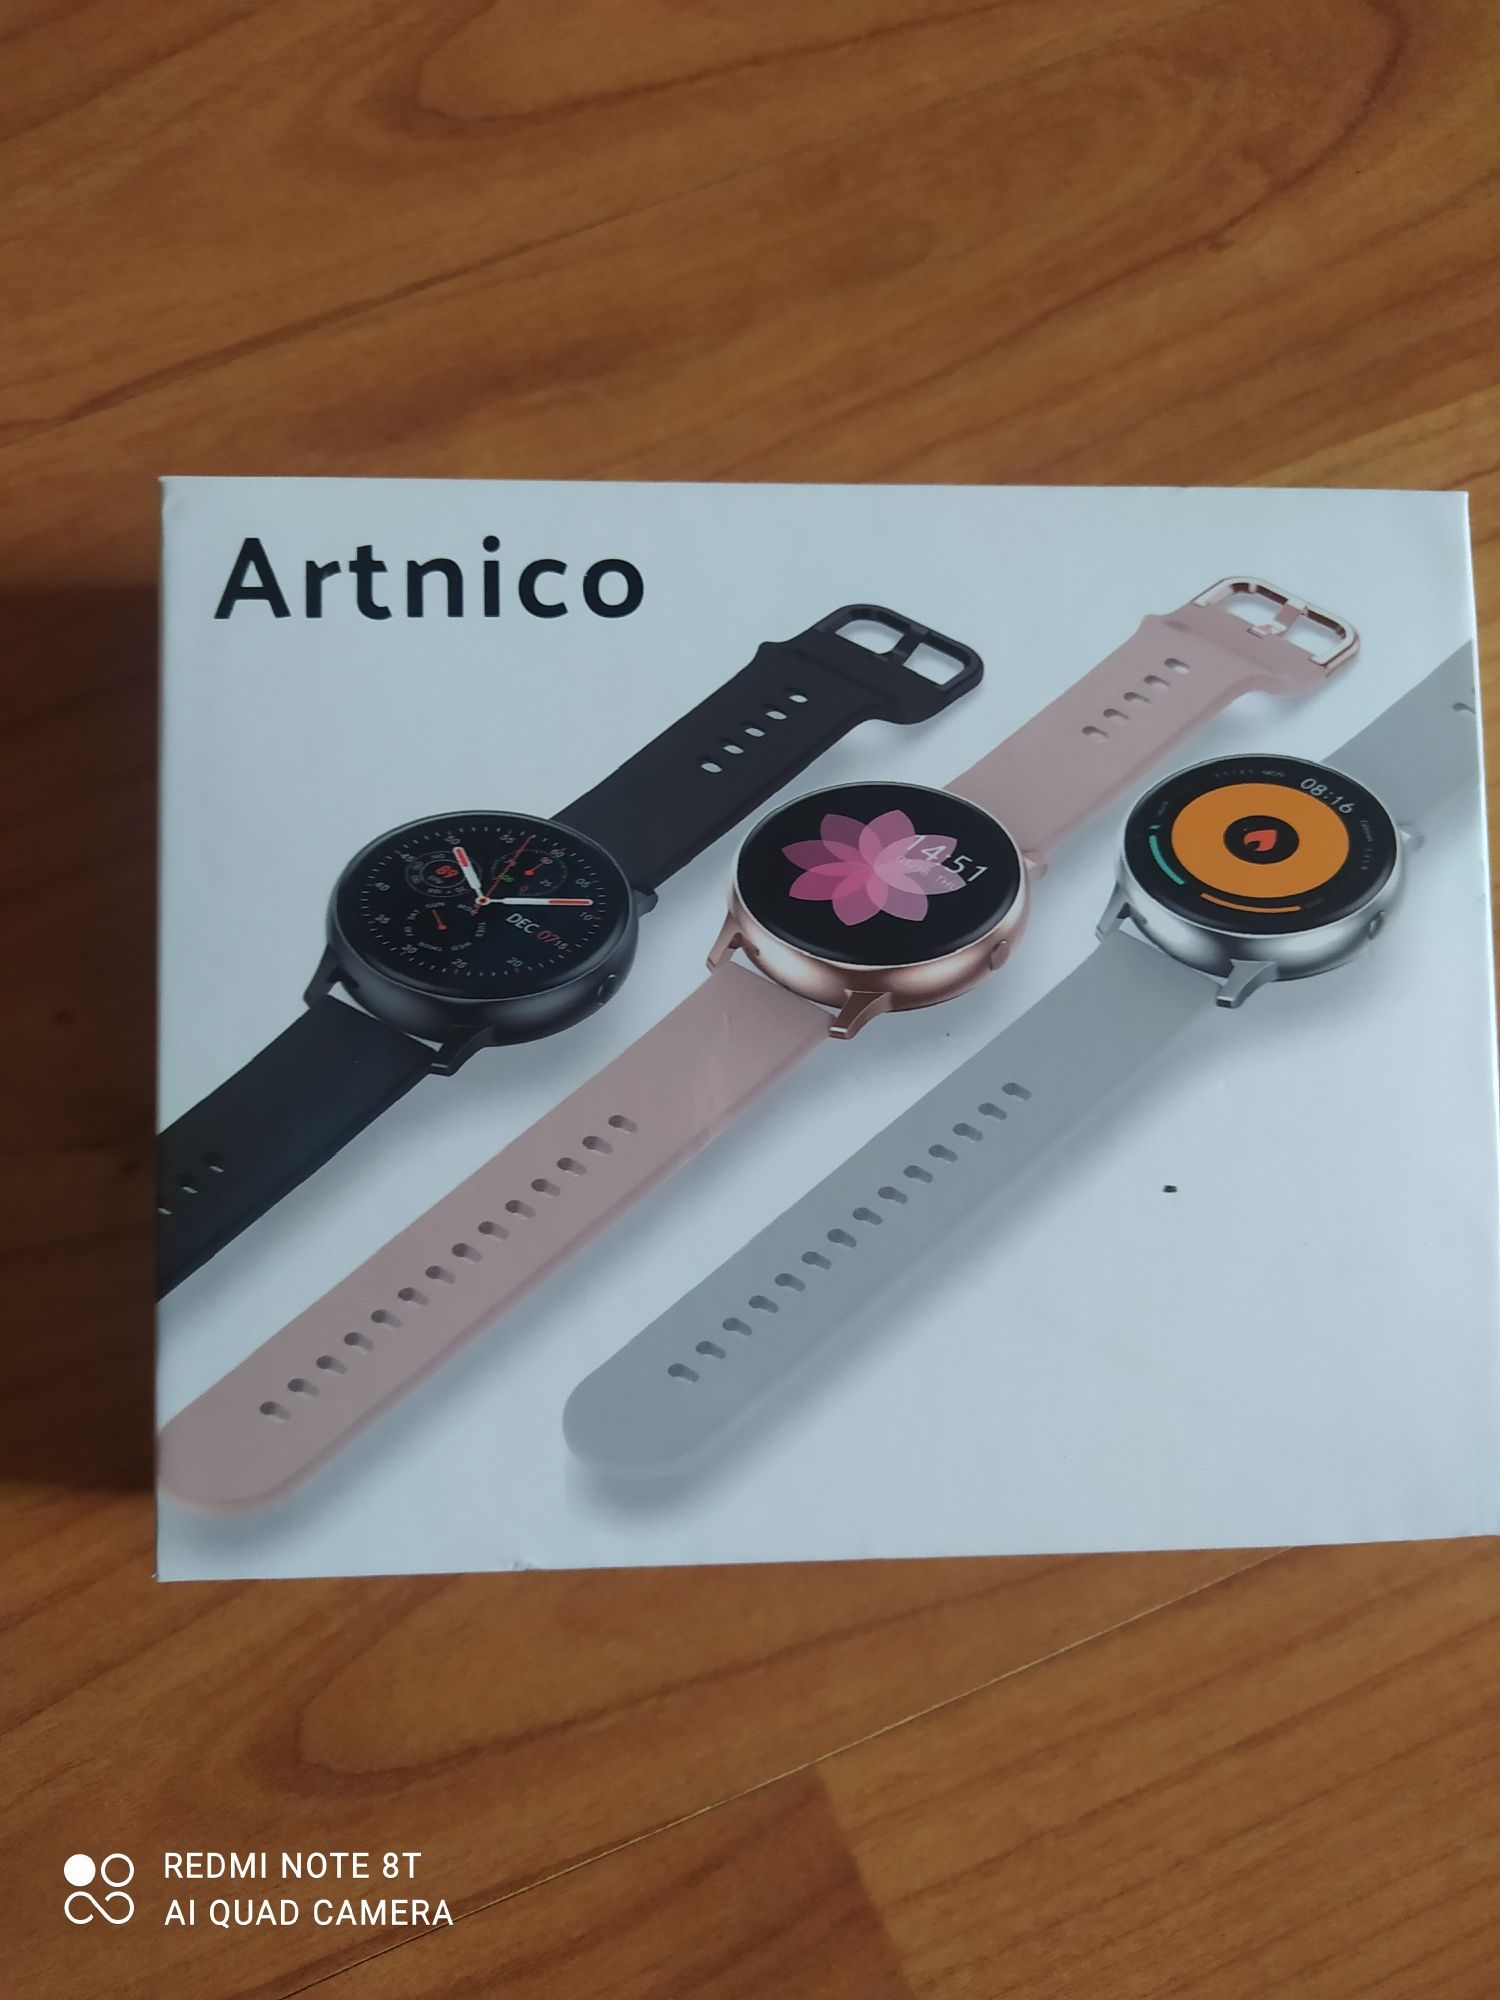 Smartwatch zegarek